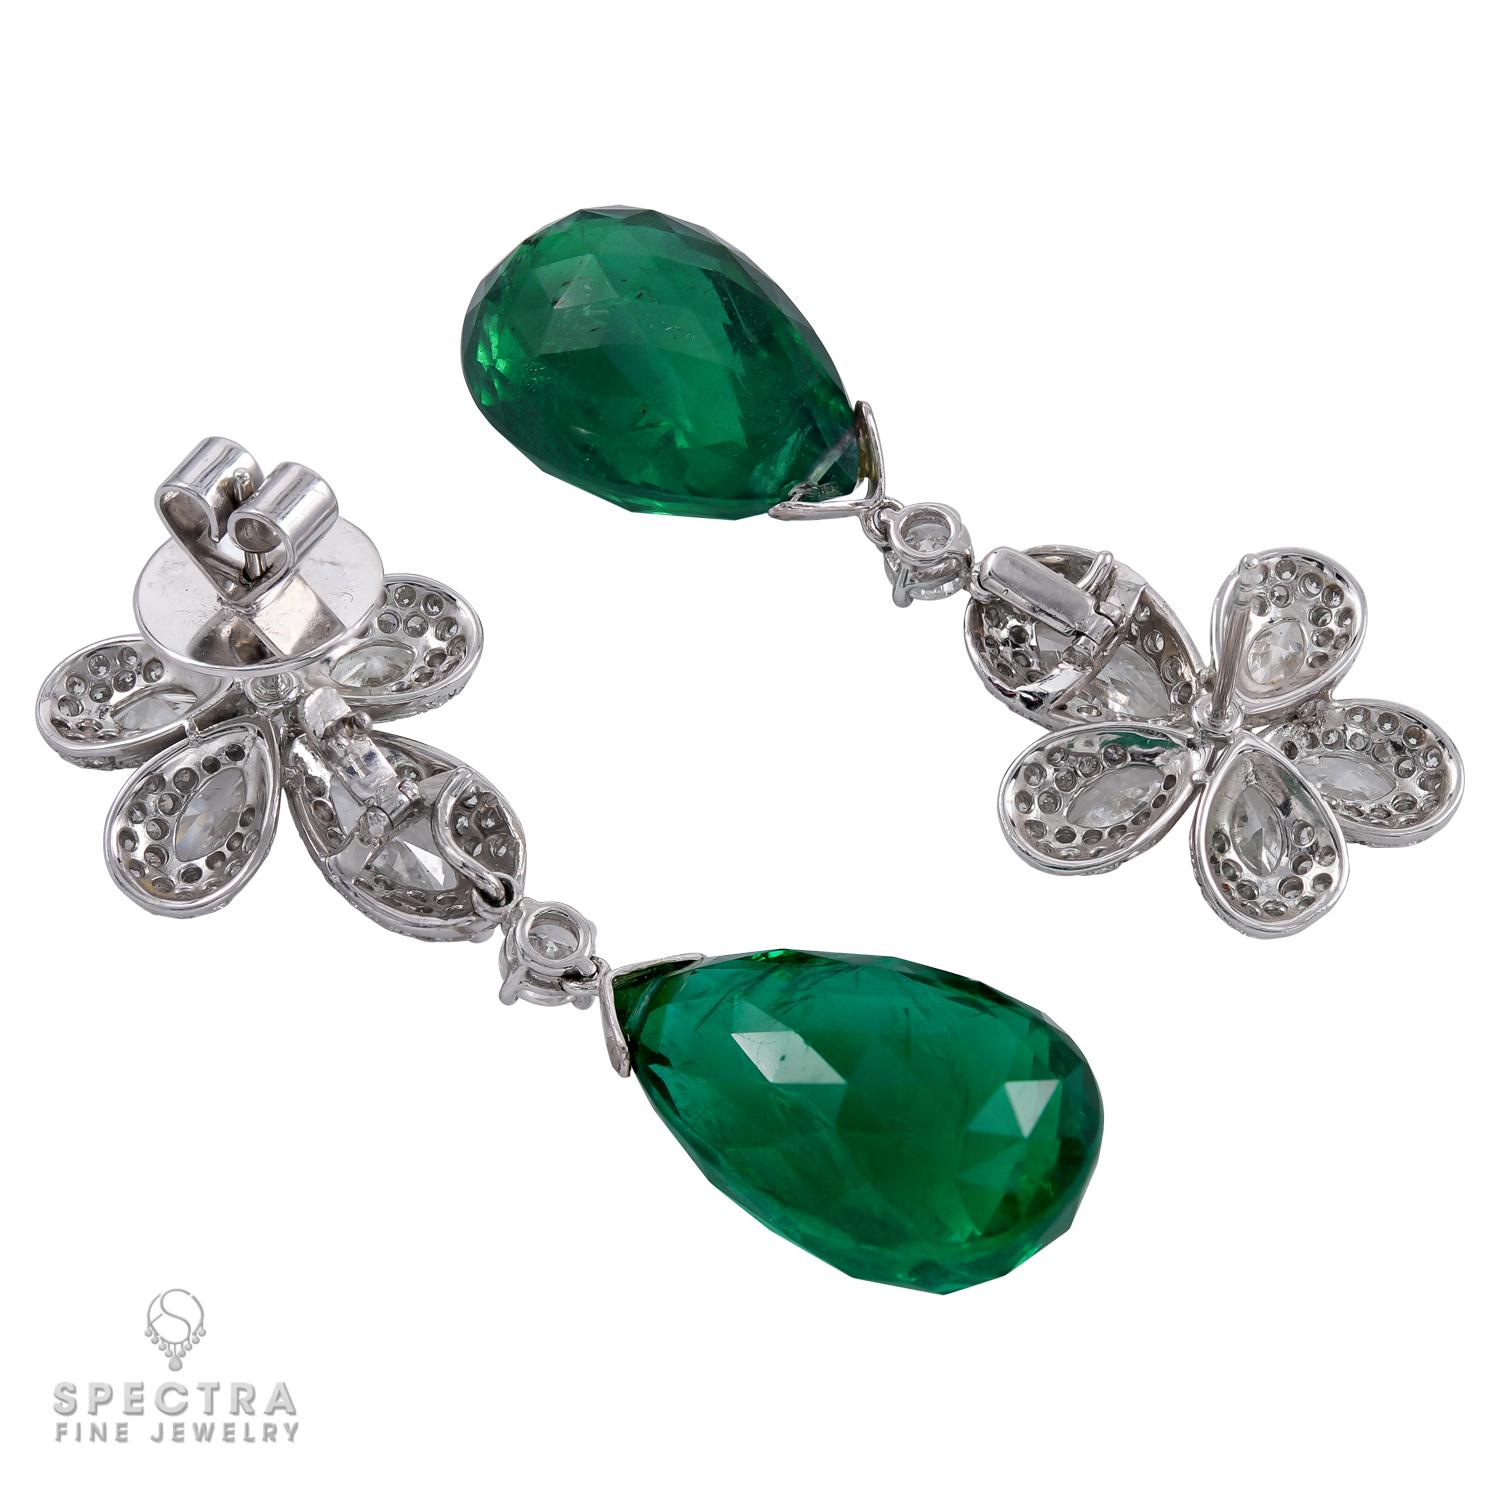 Briolette Cut Spectra Fine Jewelry Emerald Diamond Drop Earrings For Sale